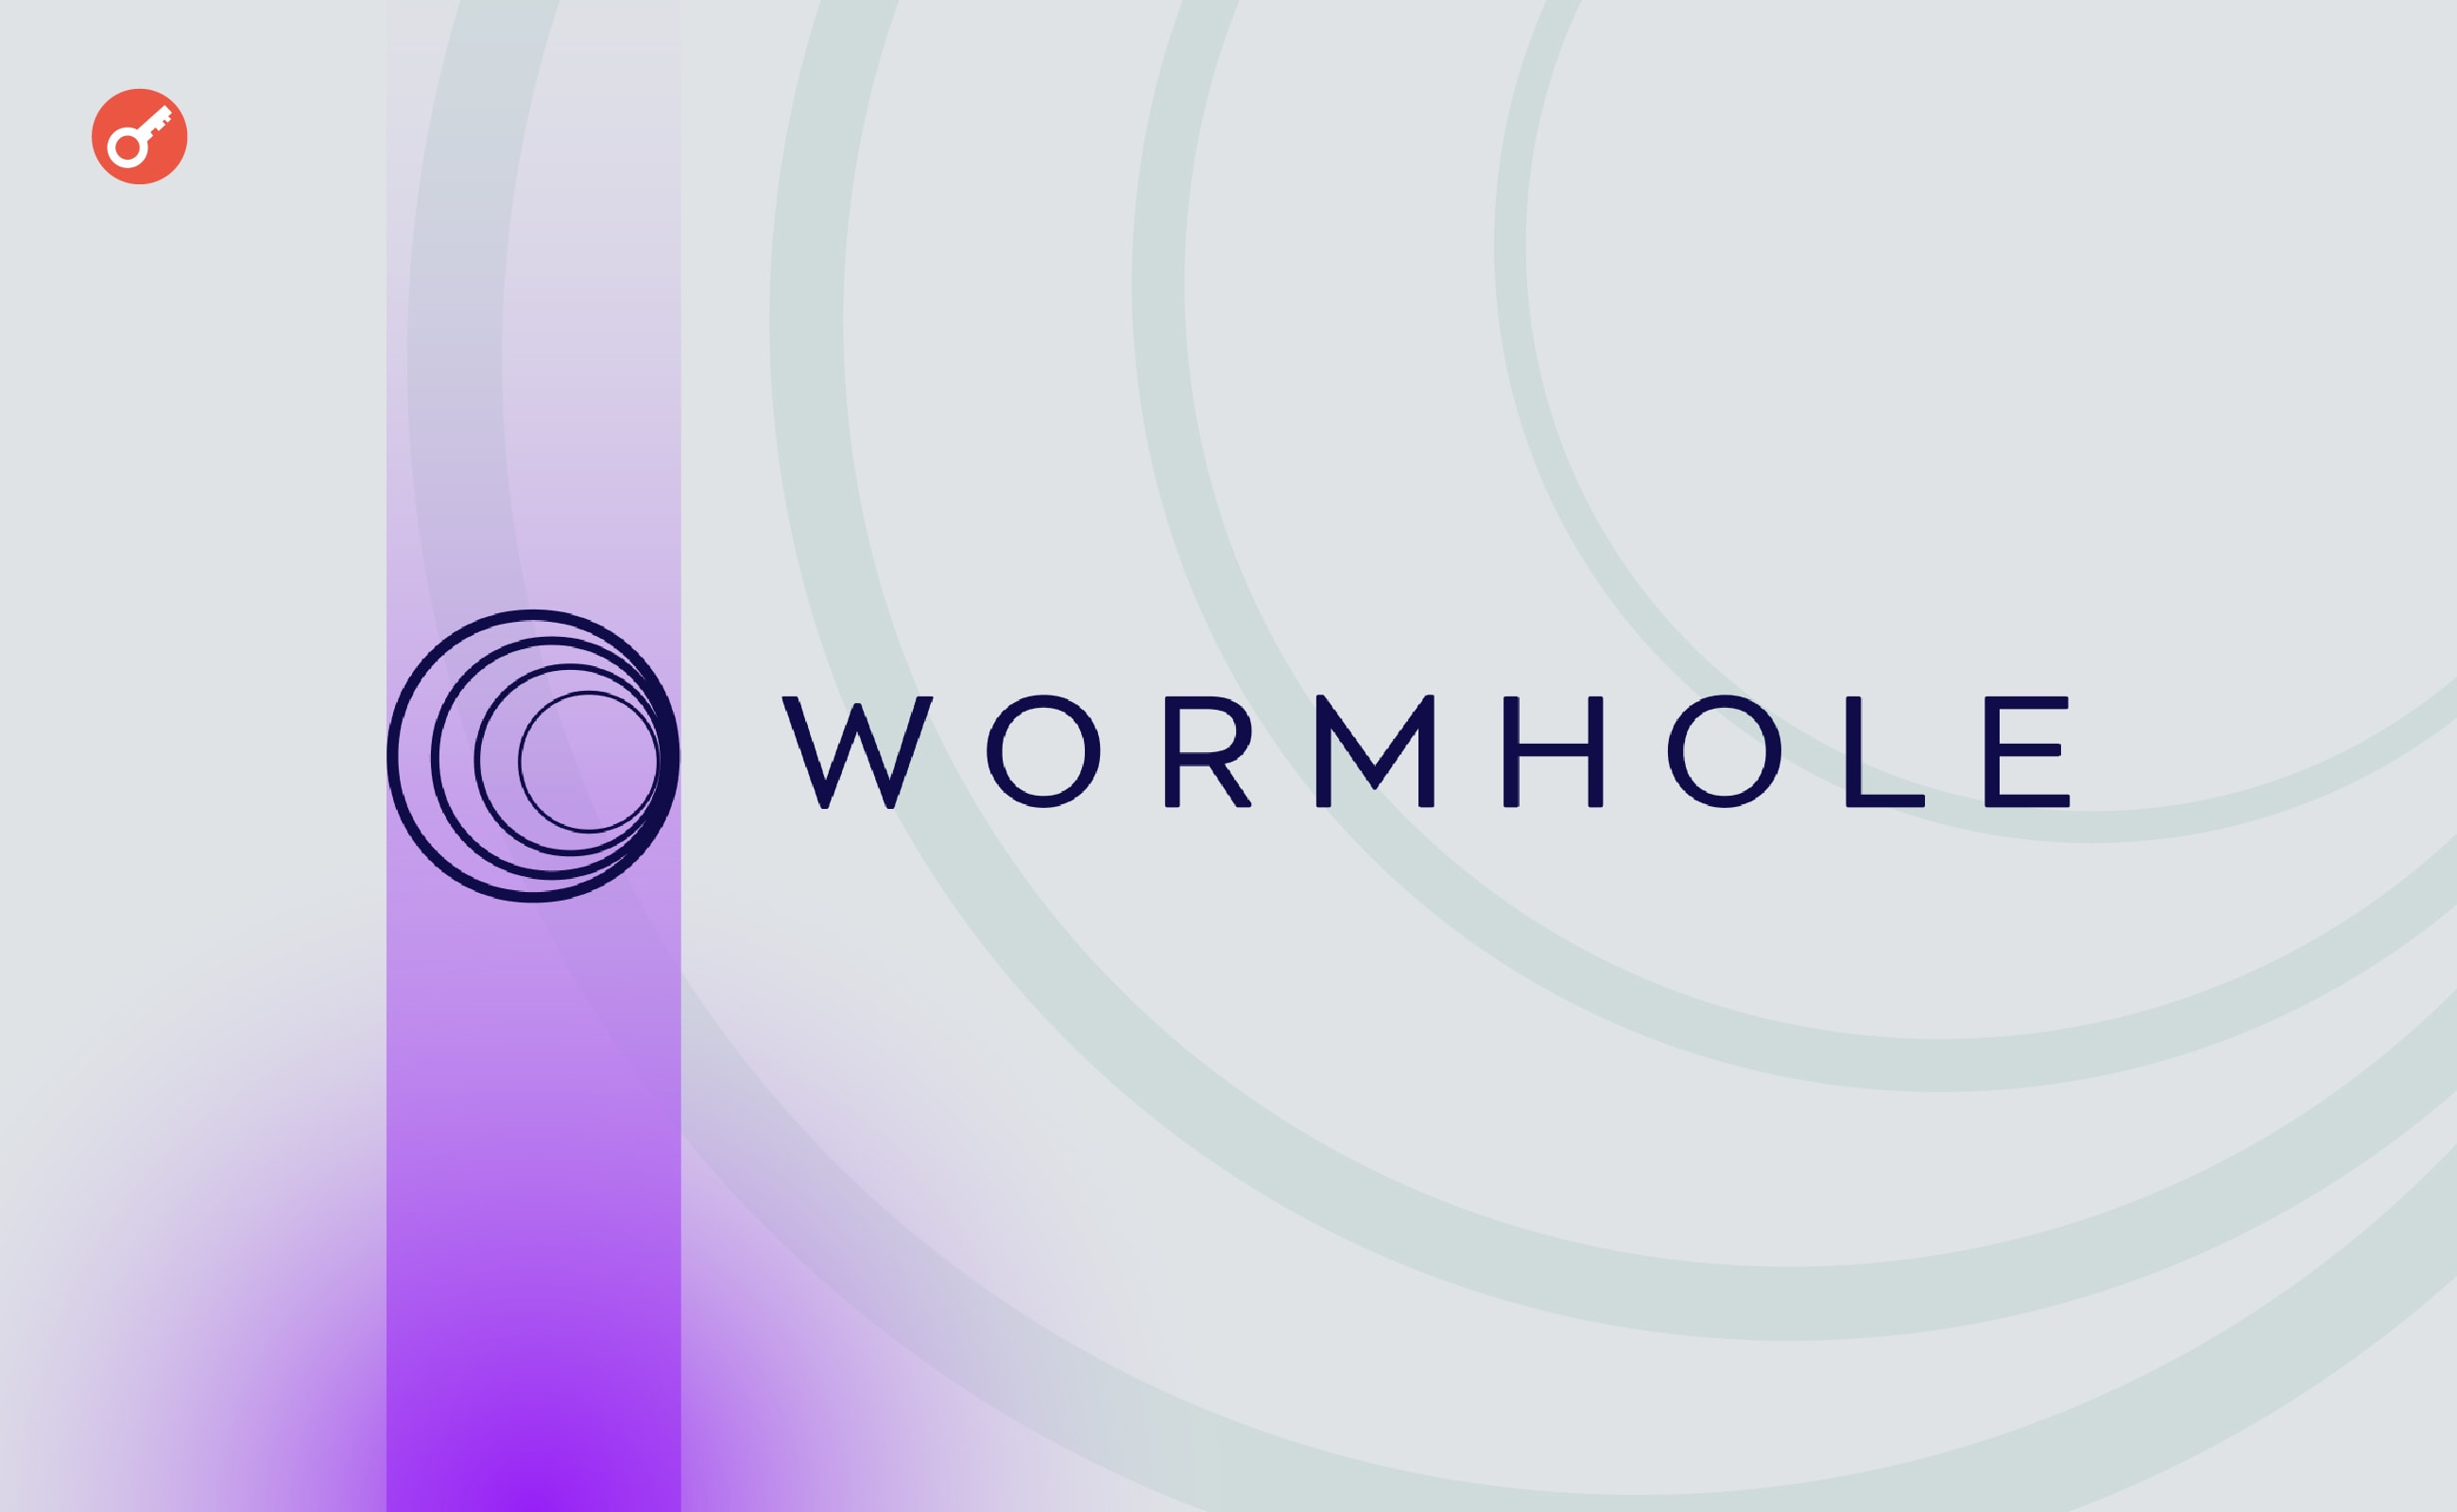 Команда Wormhole объявила о начале клейма токенов W. Заглавный коллаж новости.